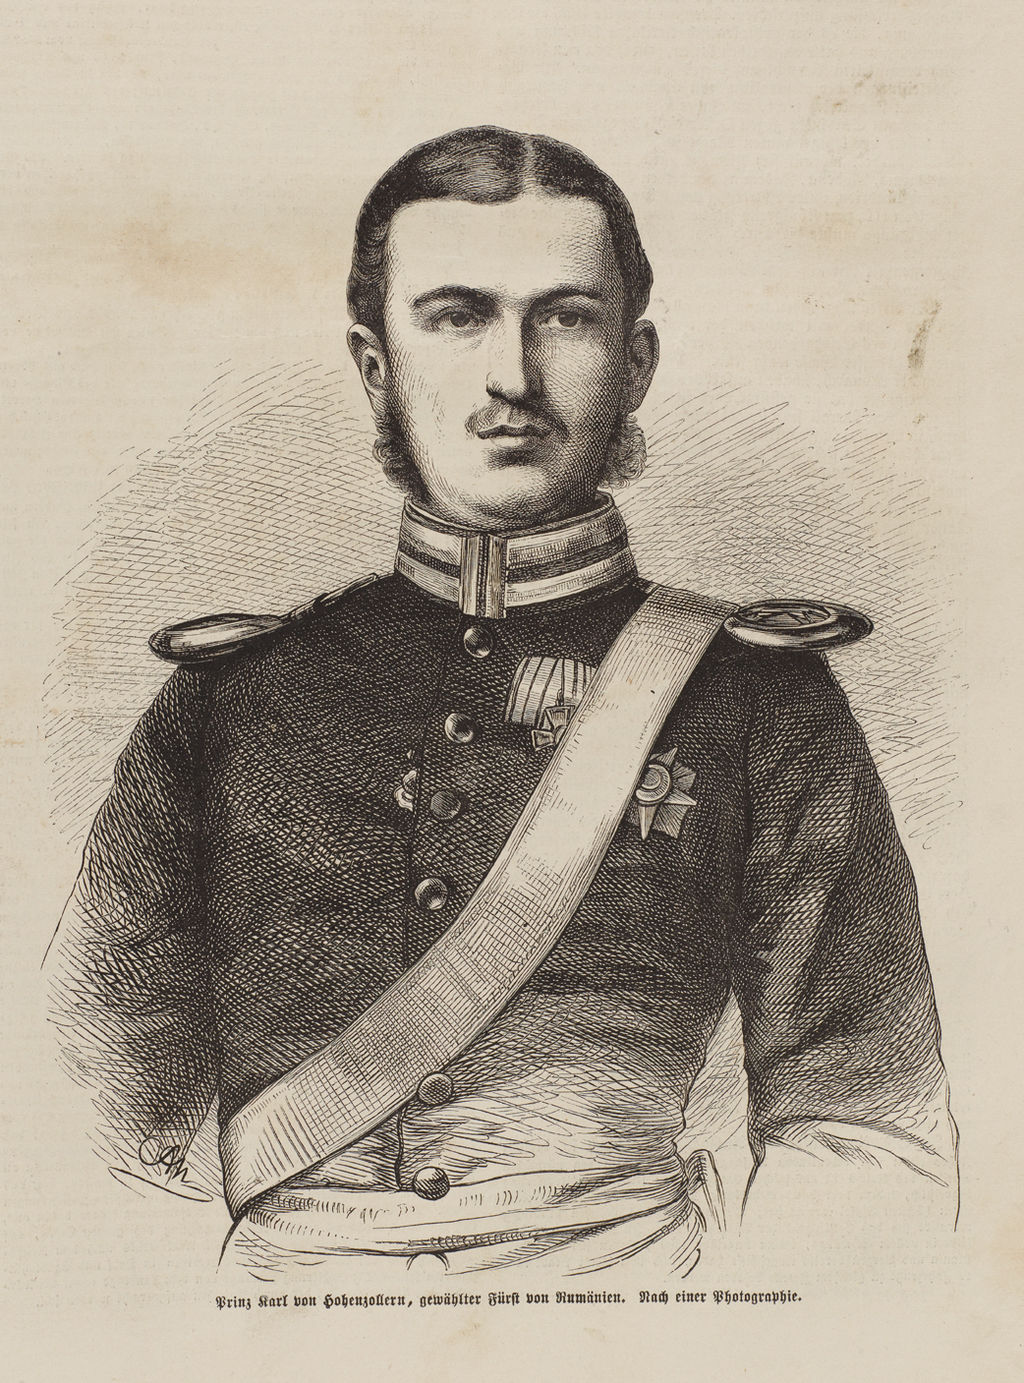 Grafik: Prinz Karl von Hohenzollern, gewählter Fürst von Rumänien, 1866